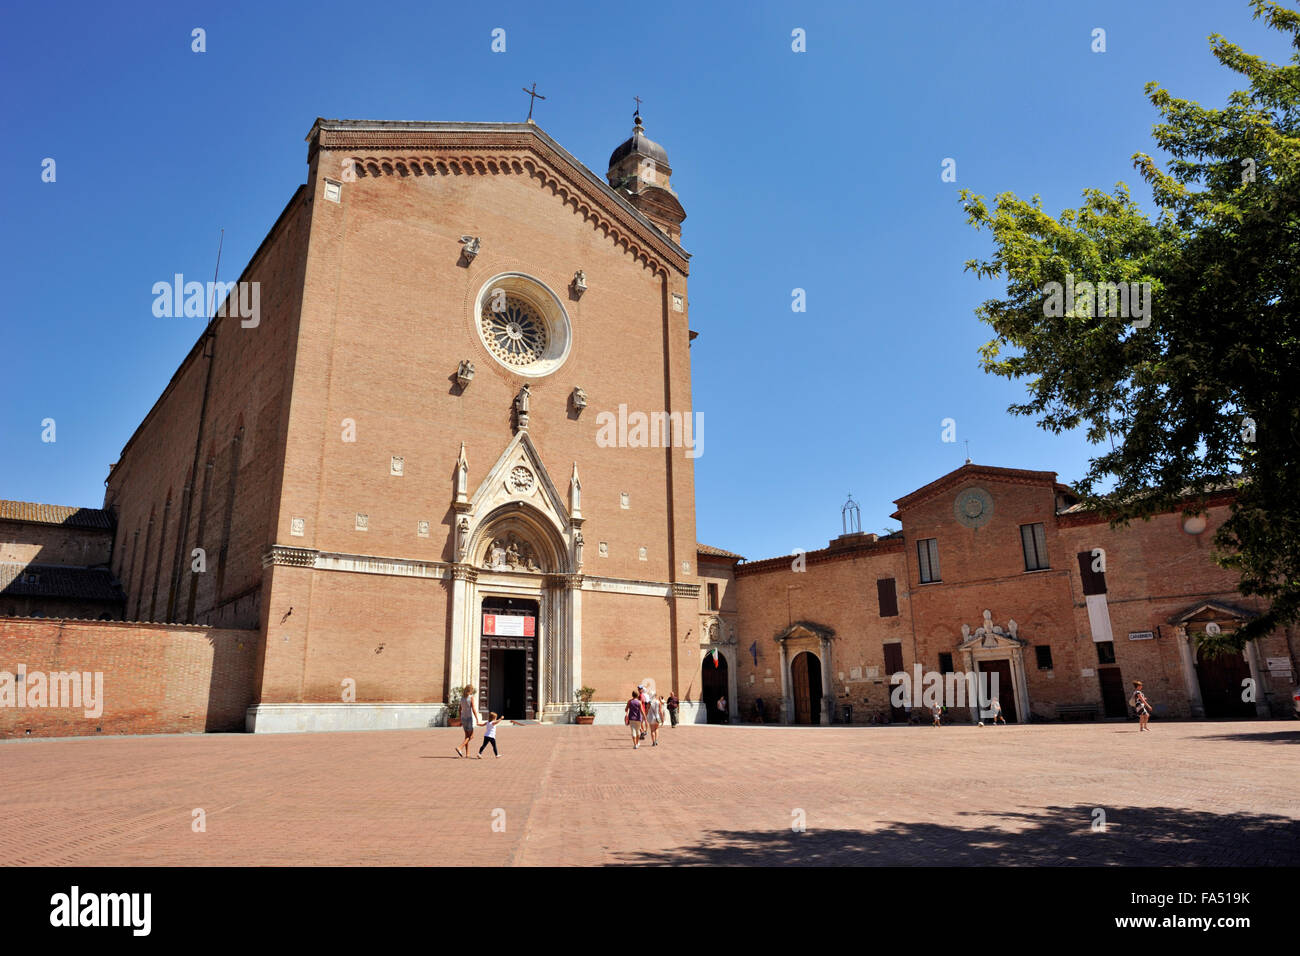 Basilica di San Francesco, Siena, Tuscany, Italy Stock Photo